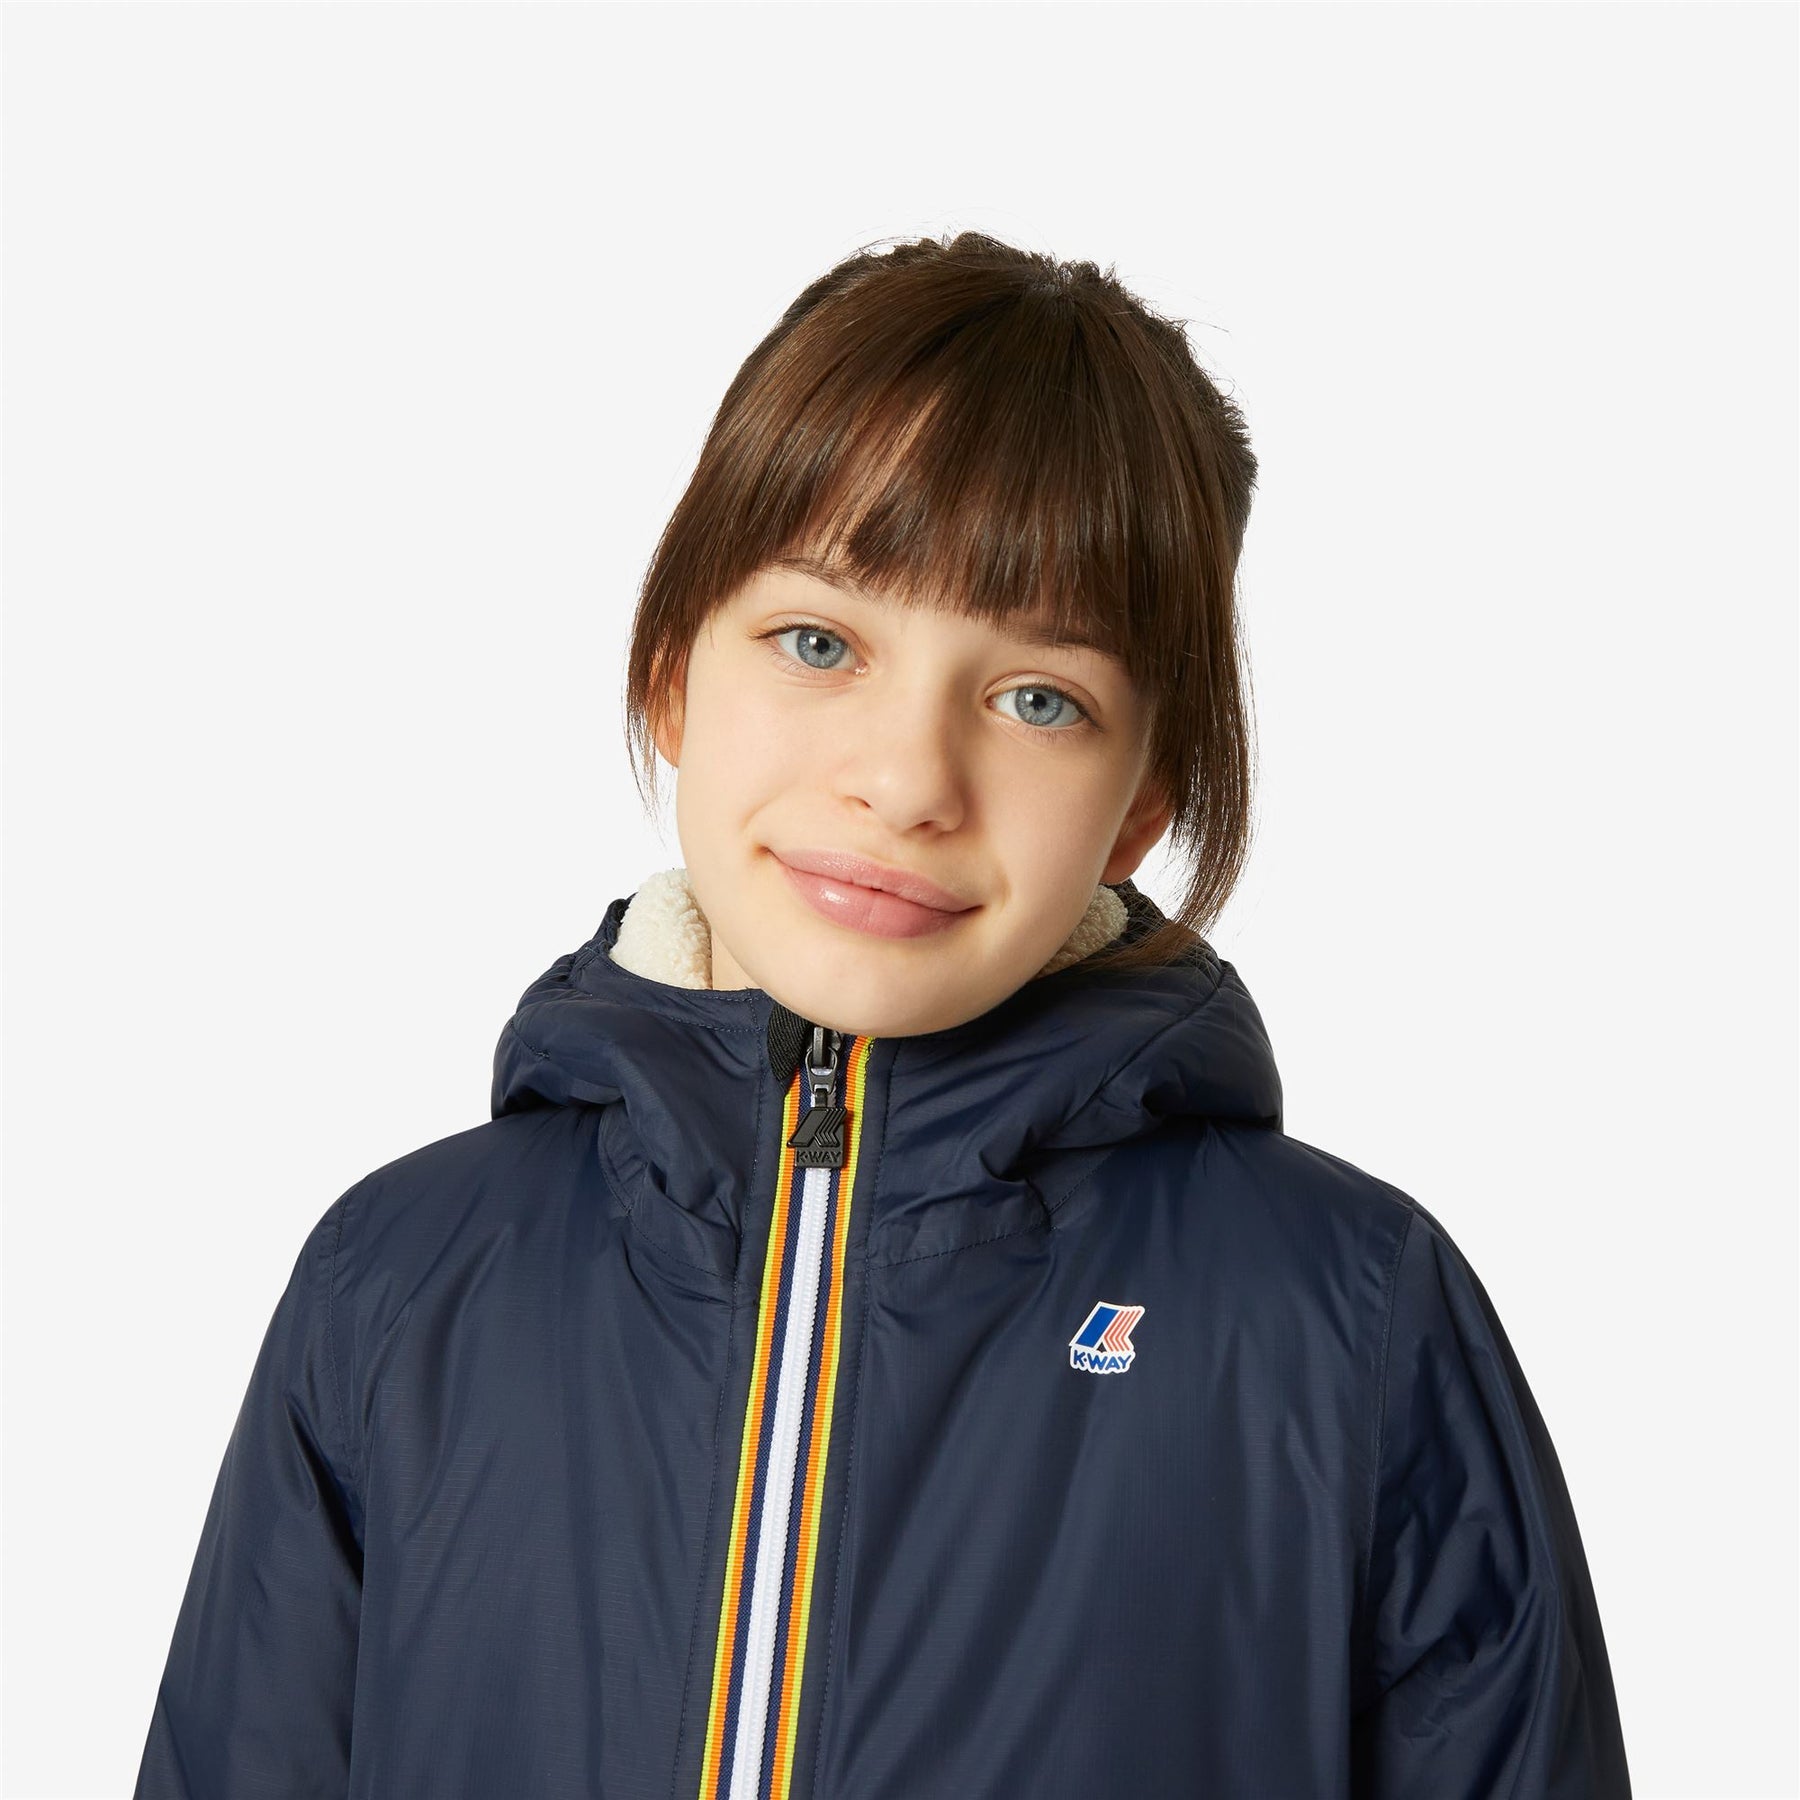 Eiffel Orsetto - Kids Lined Jackets in Ecru - Blue Depth